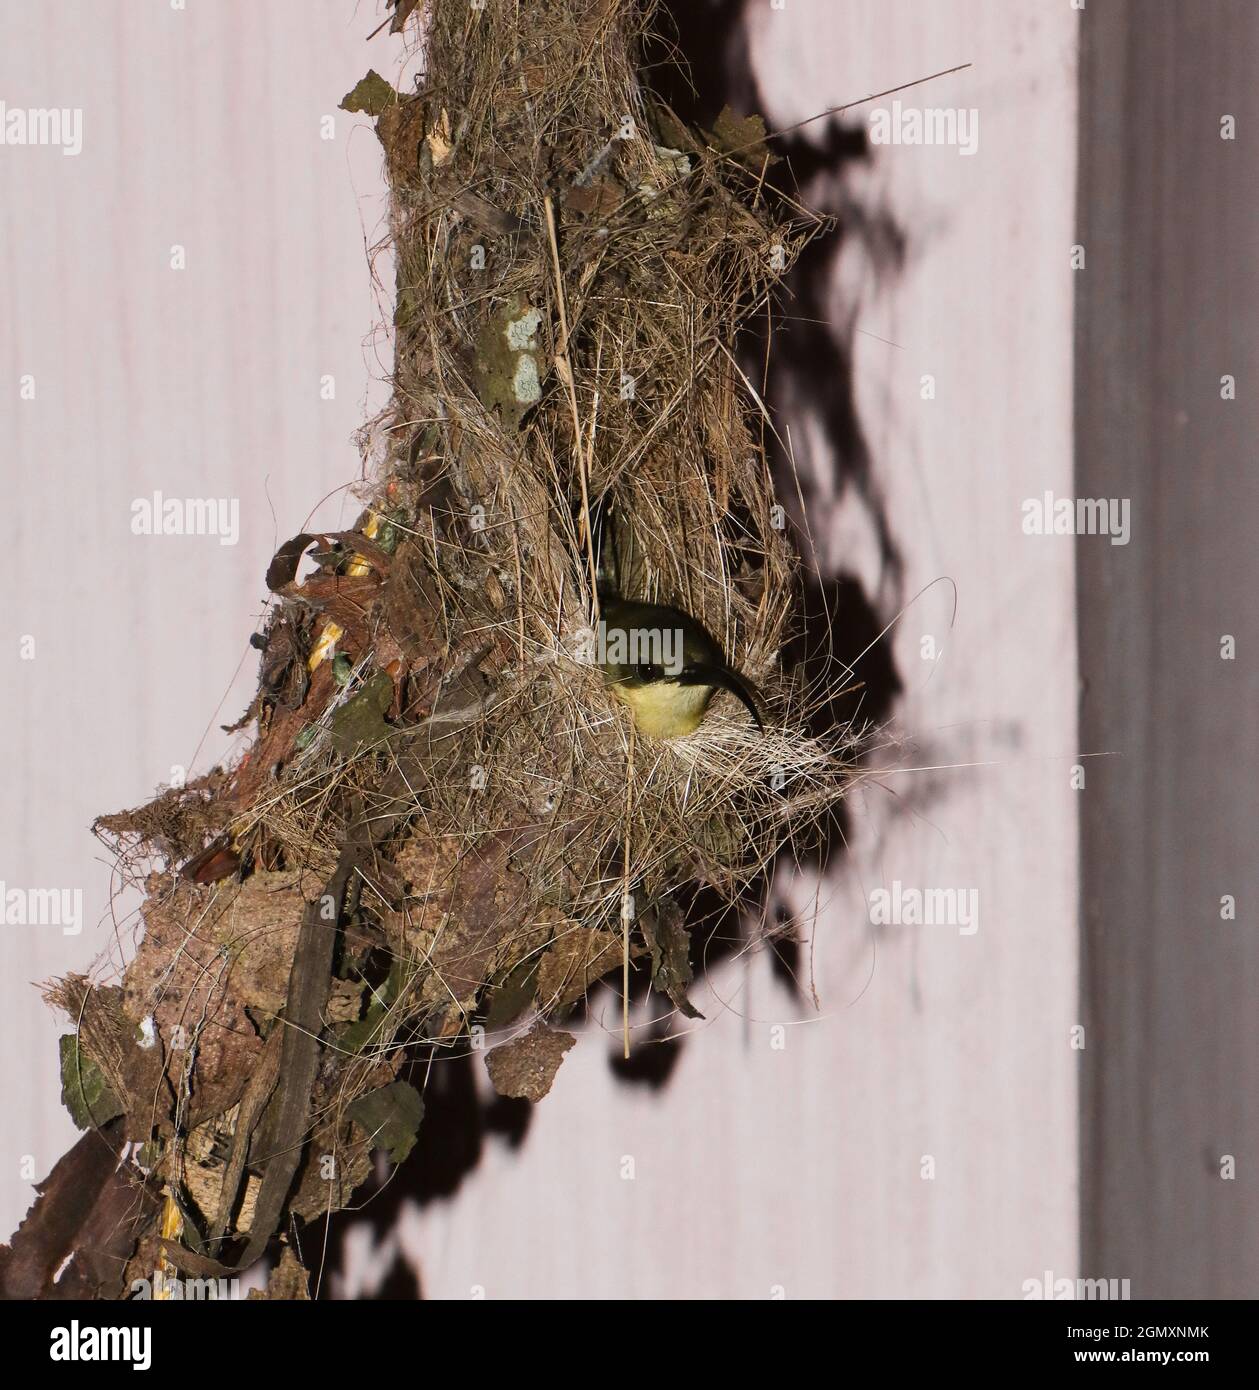 Ein kupferfarbener Sonnenvögel mit goldgelben und Kaffeefedern und einem langen gebogenen Schnabel, der abends in seinem selbstgewebten braunen Nest sitzt Stockfoto